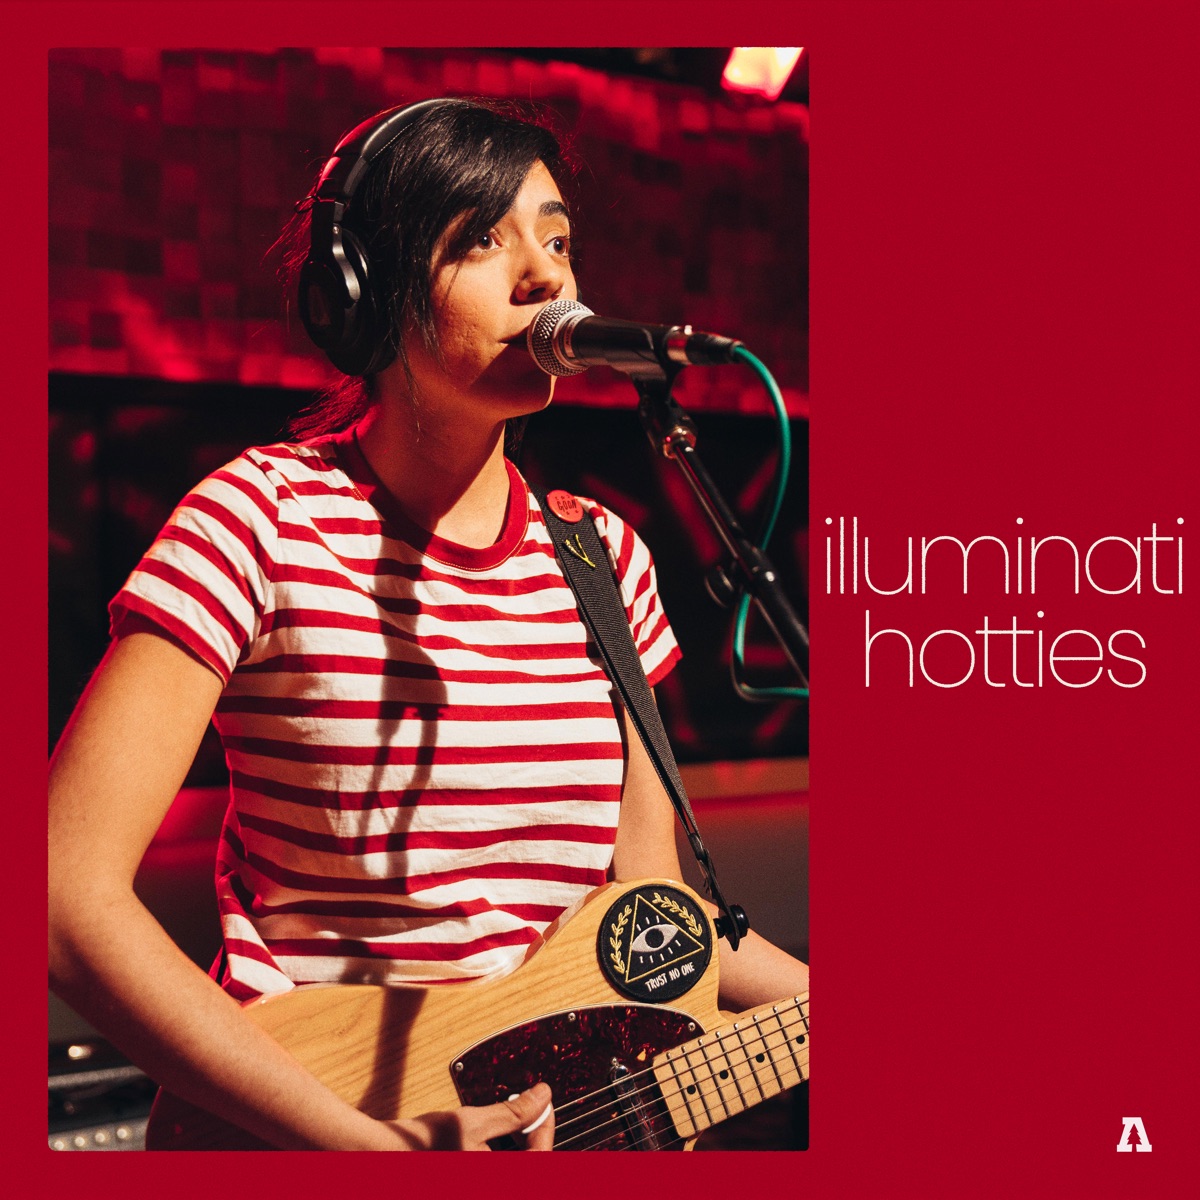 Illuminati Hotties on Audiotree Live - Album di illuminati hotties &  Audiotree - Apple Music